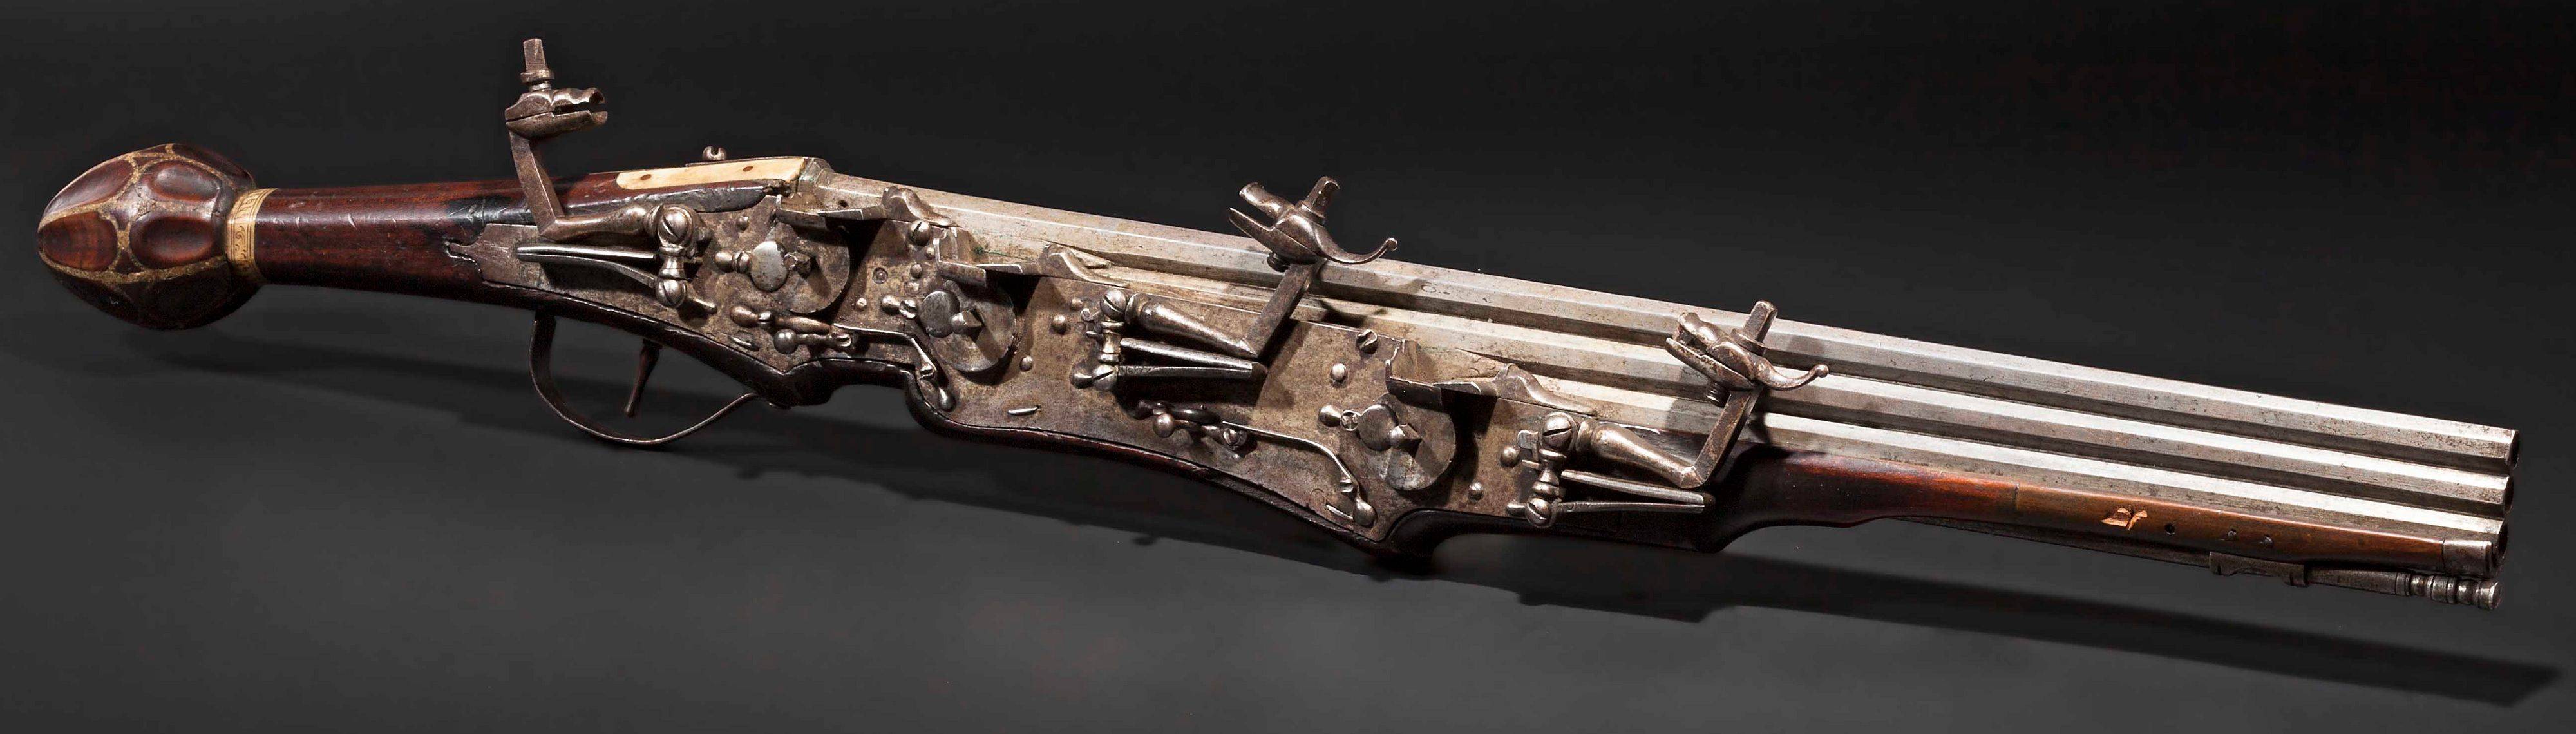 Оружие — арбалет в истории средневековья, описание и характеристики